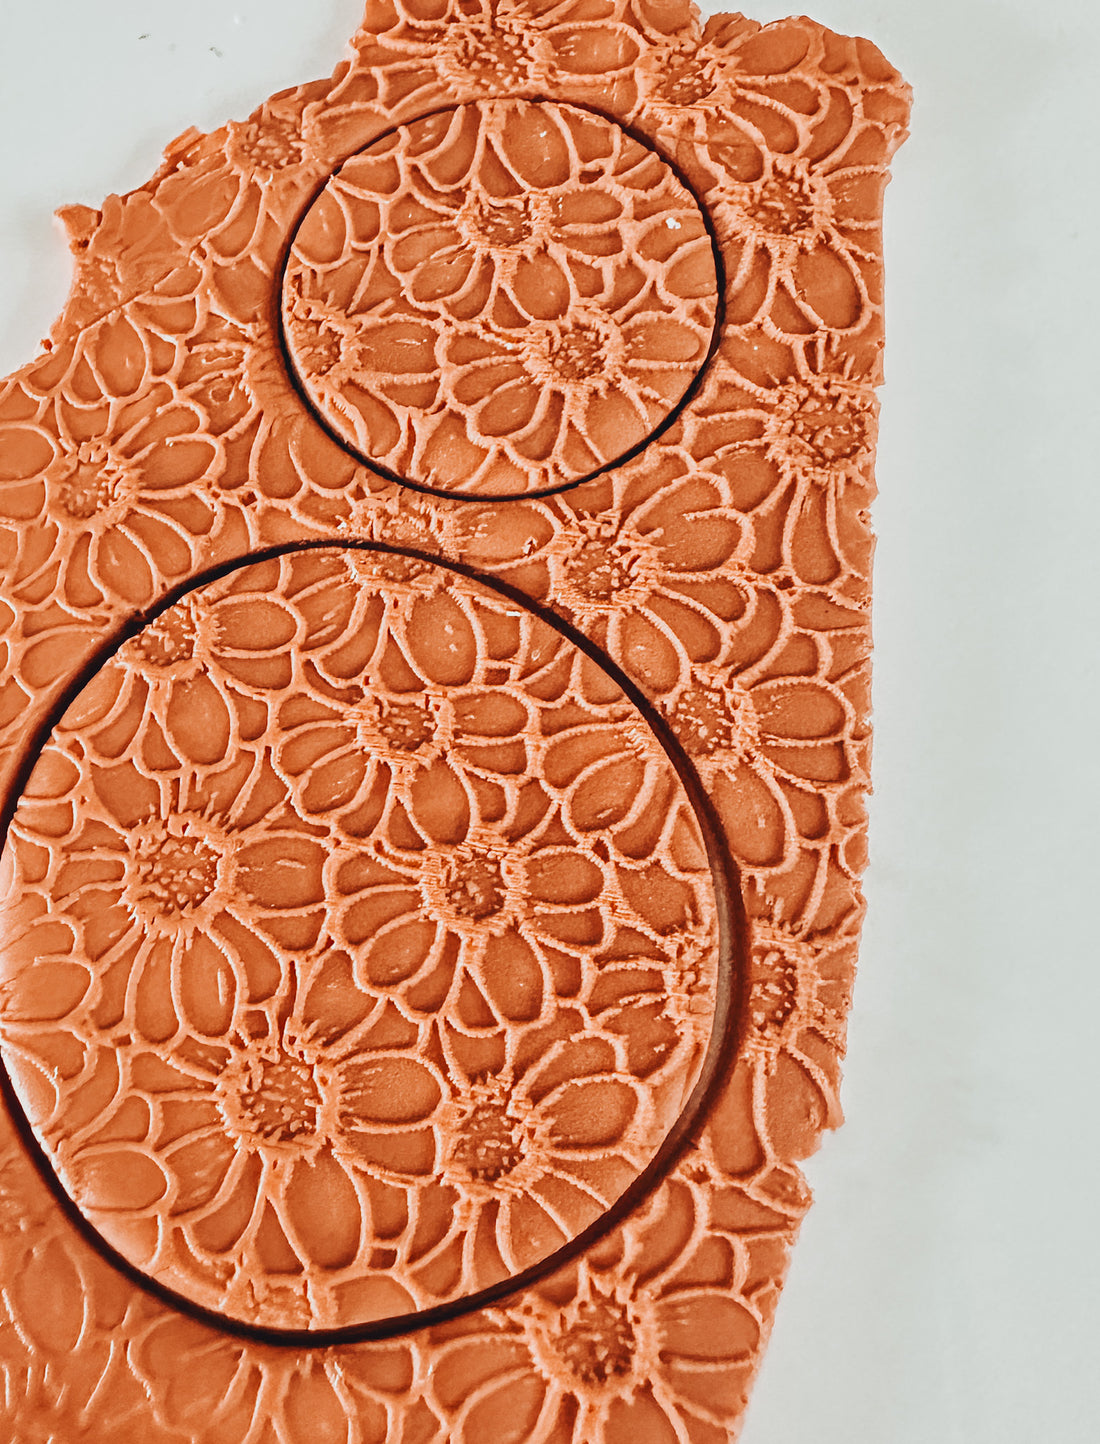 Flower Clay Texture Mat